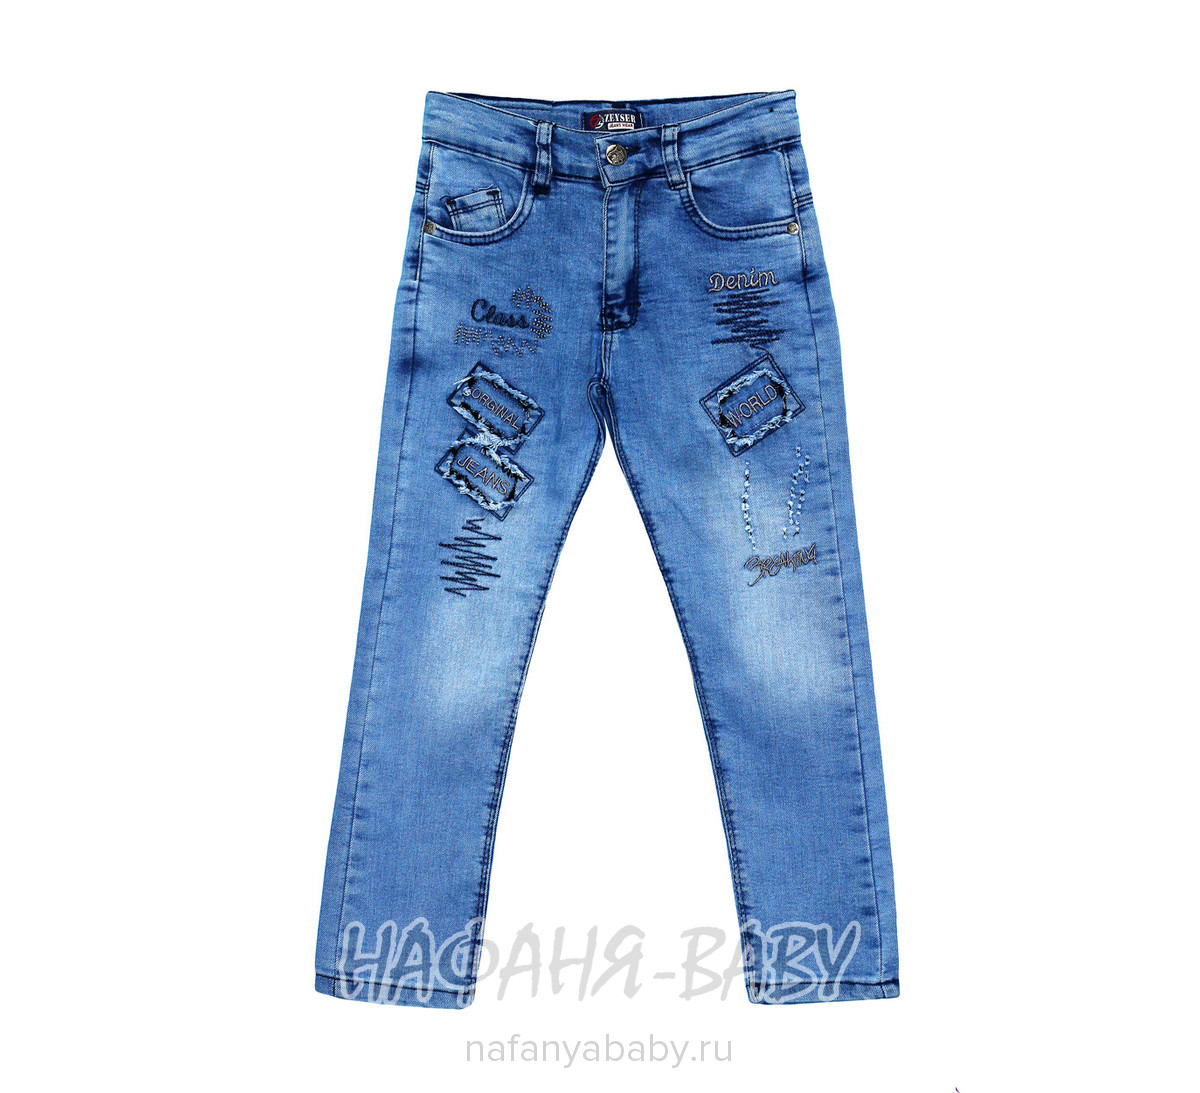 Подростковые джинсы ZEYSER арт: 62471, 10-15 лет, 5-9 лет, оптом Турция